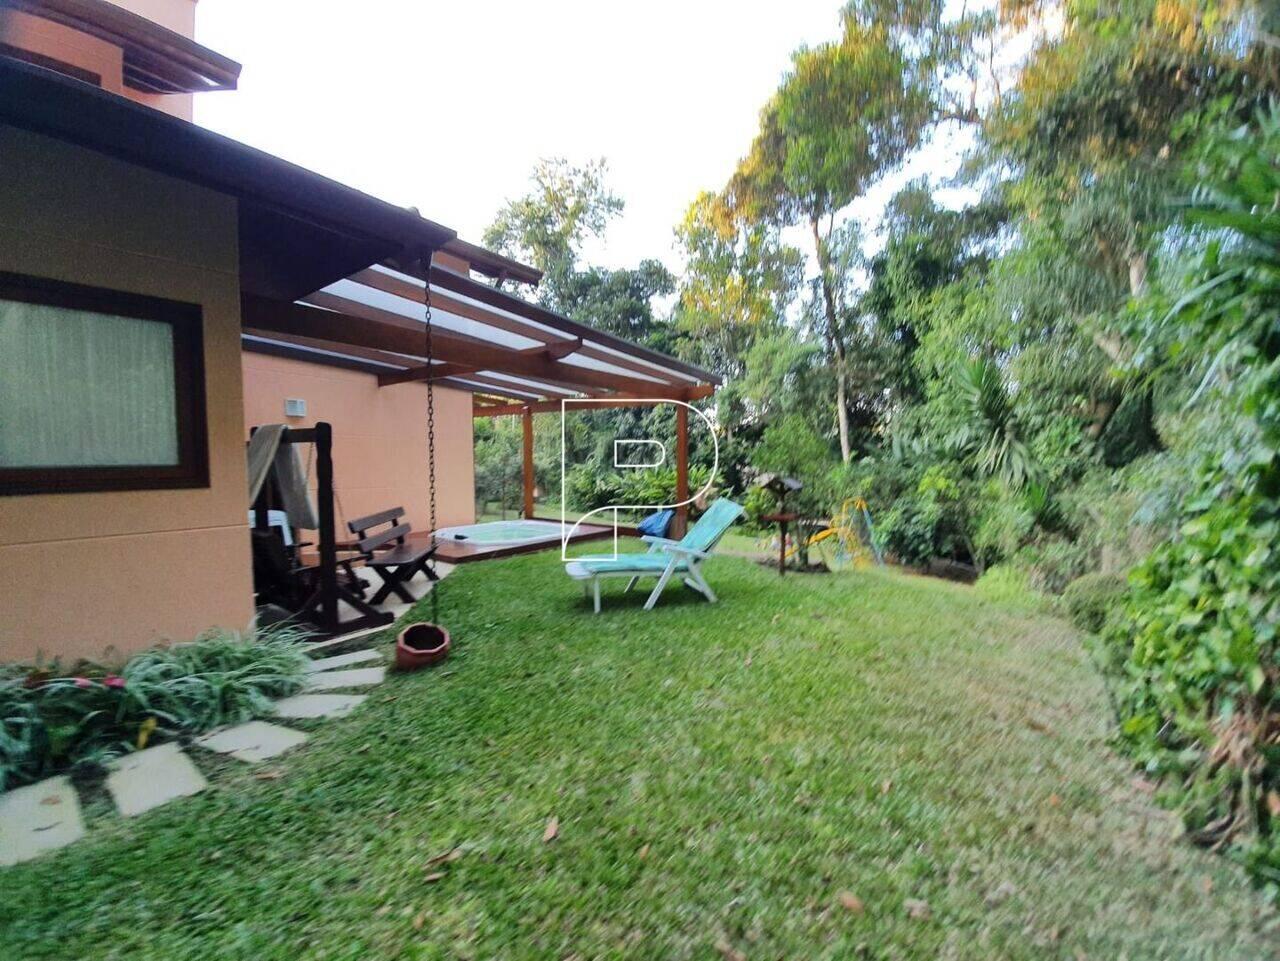 Casa Vila Verde, Itapevi - SP